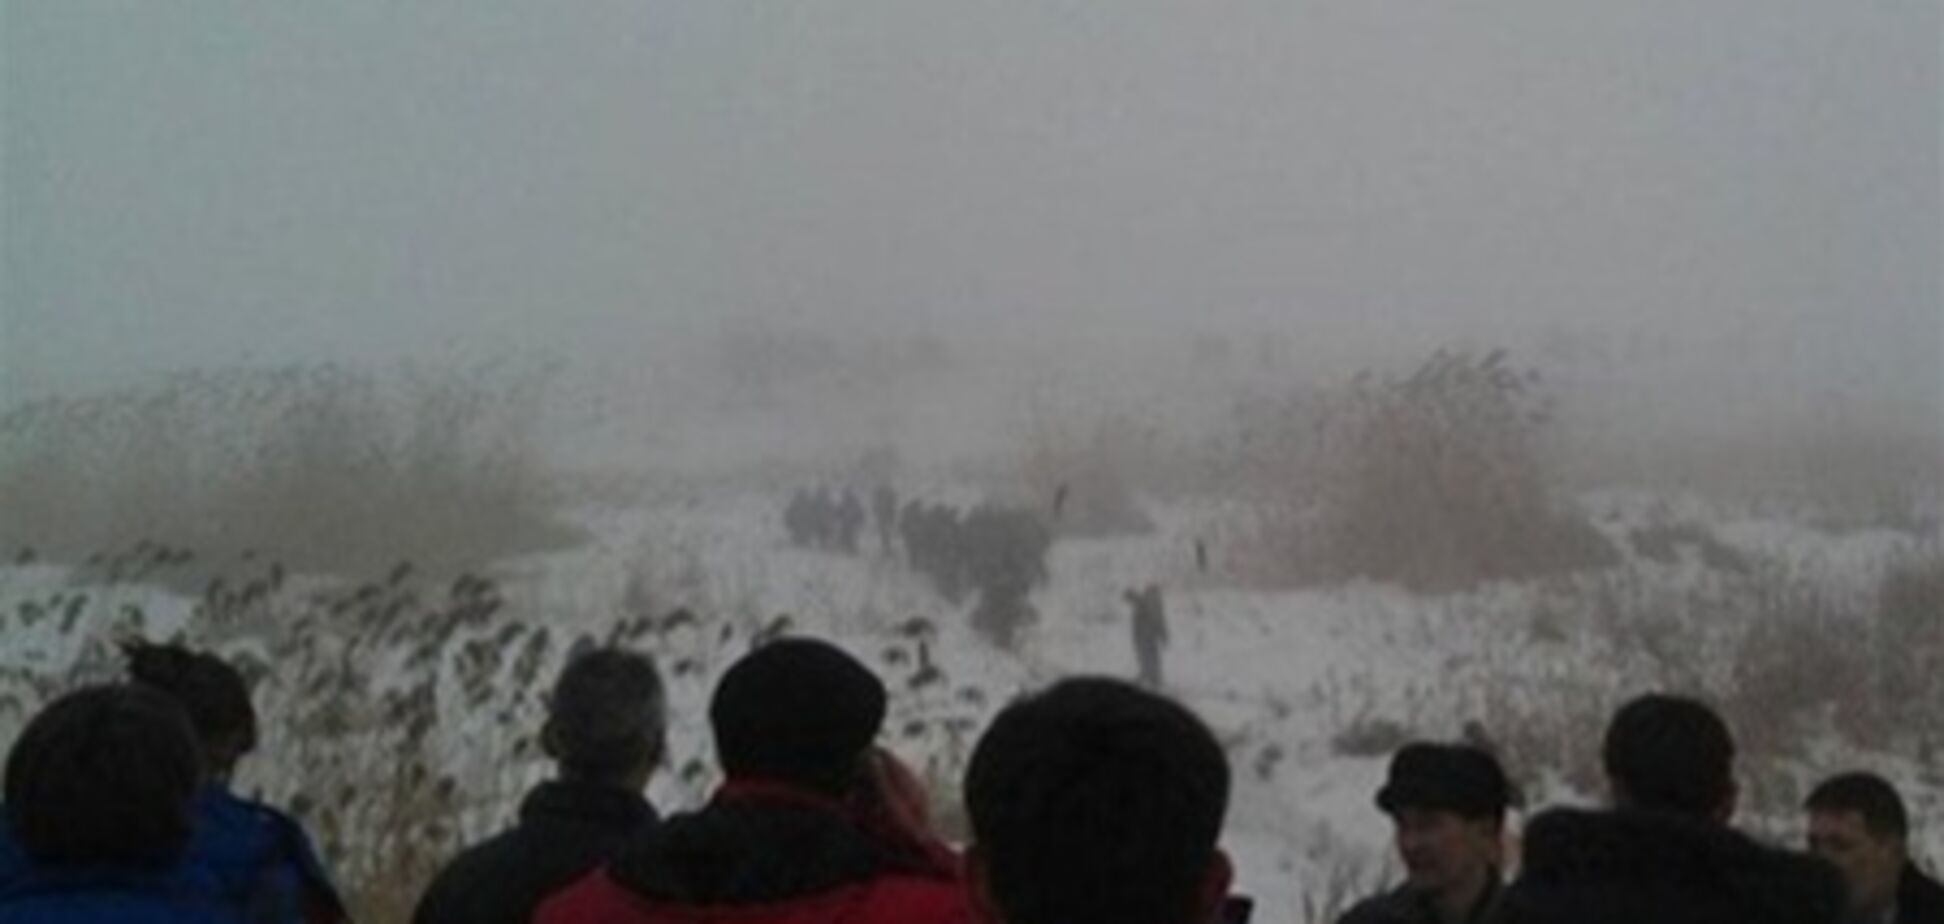 В Казахстане разбился самолет: выживших нет. Видео